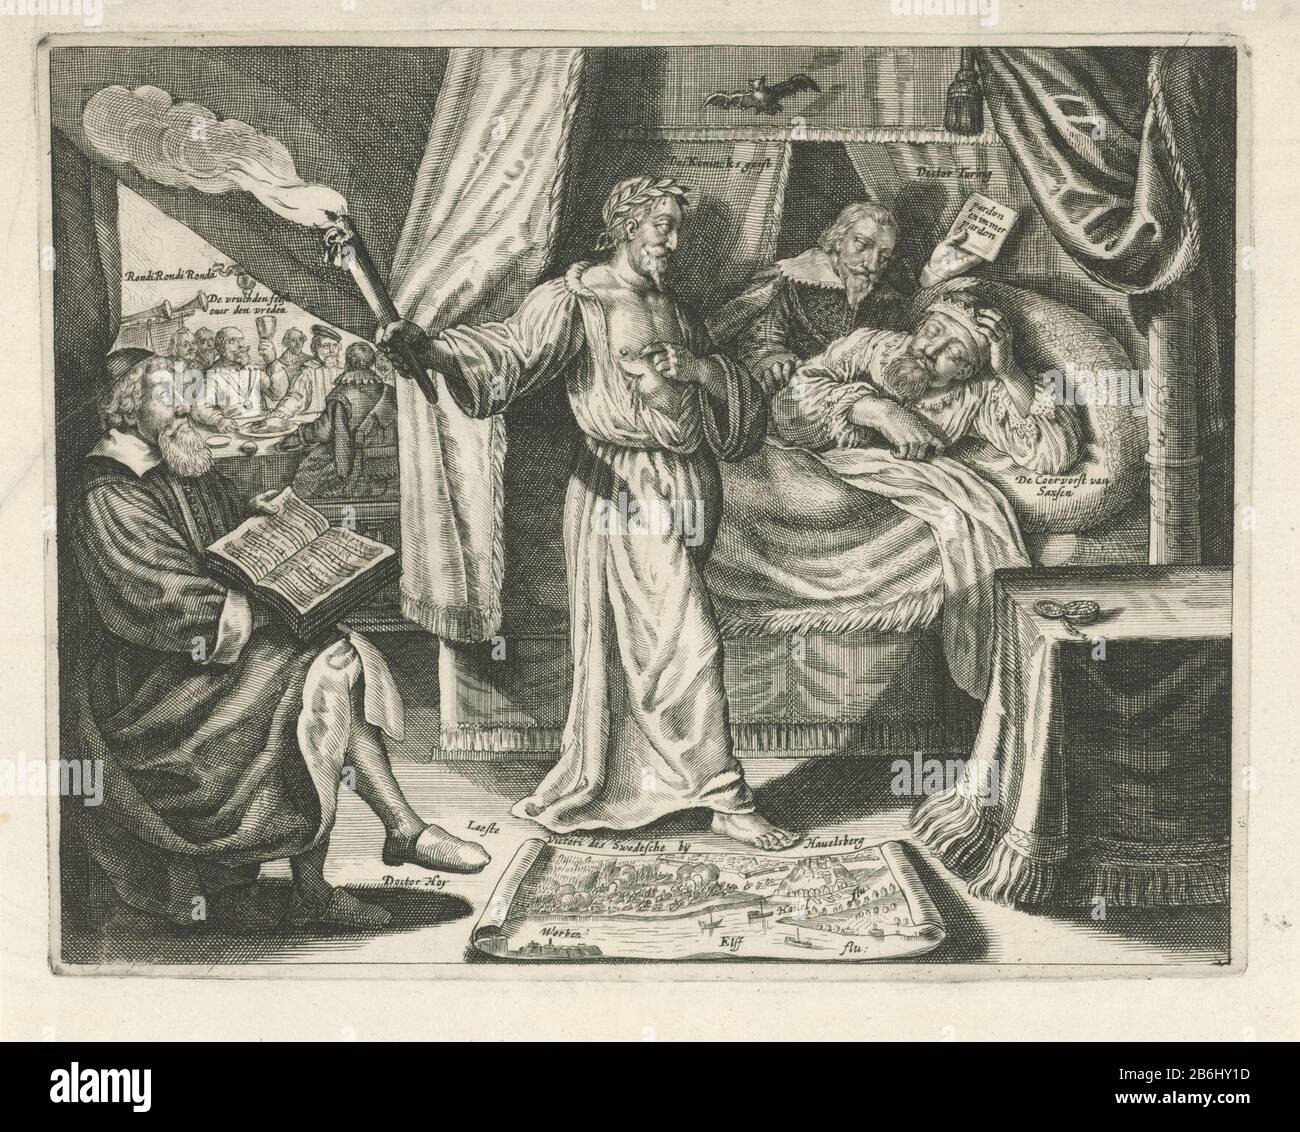 Der Geist von Gustavus Adolphus erscheint am Krankenbett des sächsischen  Kurfürst, 1635 Erscheint Der Geist von Gustavus Adolphus mit brennender  Fackel am Bettseitbett von Johannes Georg I., Kurfürst von Sachsen.  Anschuldigung des